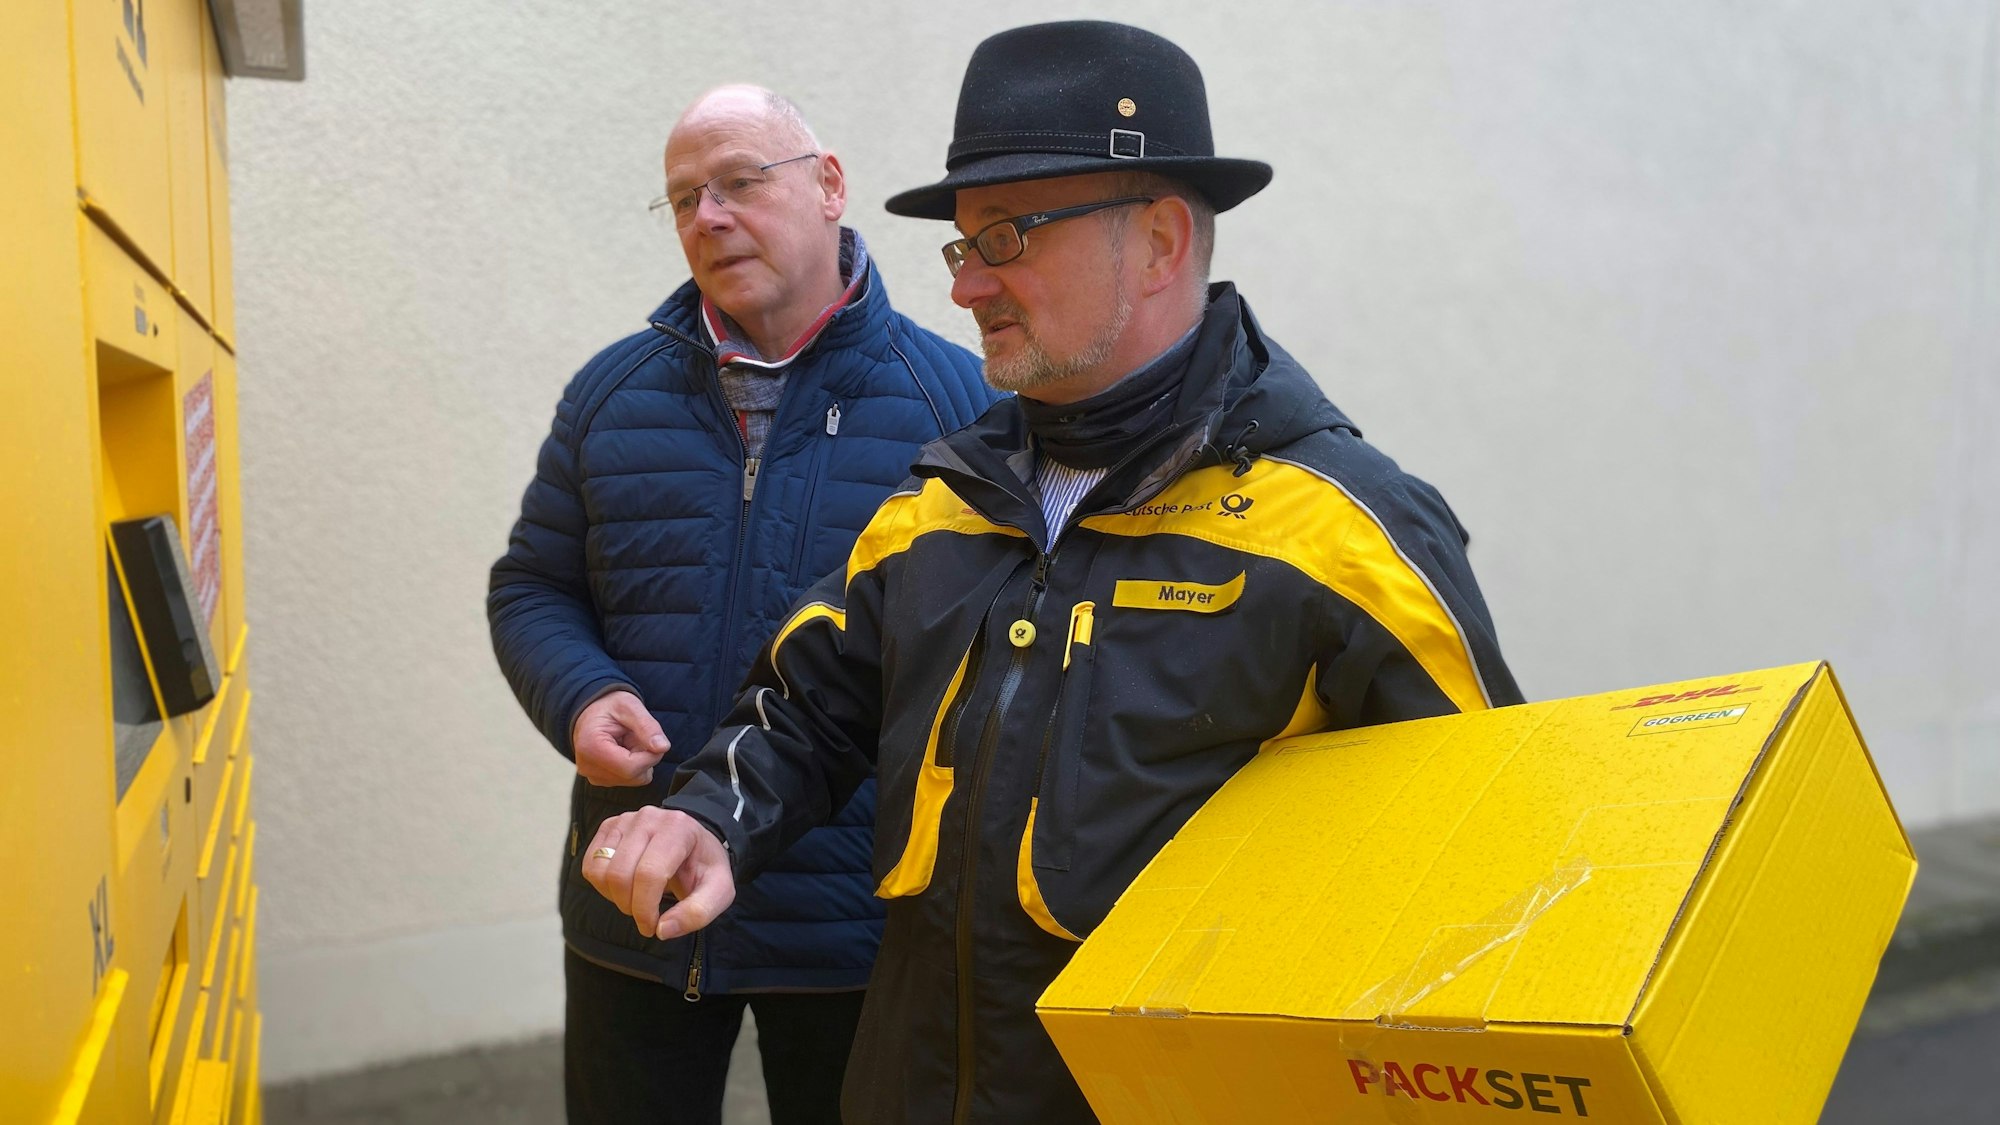 Alexander Eskes, Erster Beigeordneter der Gemeinde Weilerswist und Peter Mayer, der regionale Politikbeauftragte der Deutschen Post, stehen vor der Poststation 711 an der Meckenheimer Straße 40 in Weilerswist. Mayer hält ein Paket in den Händen.